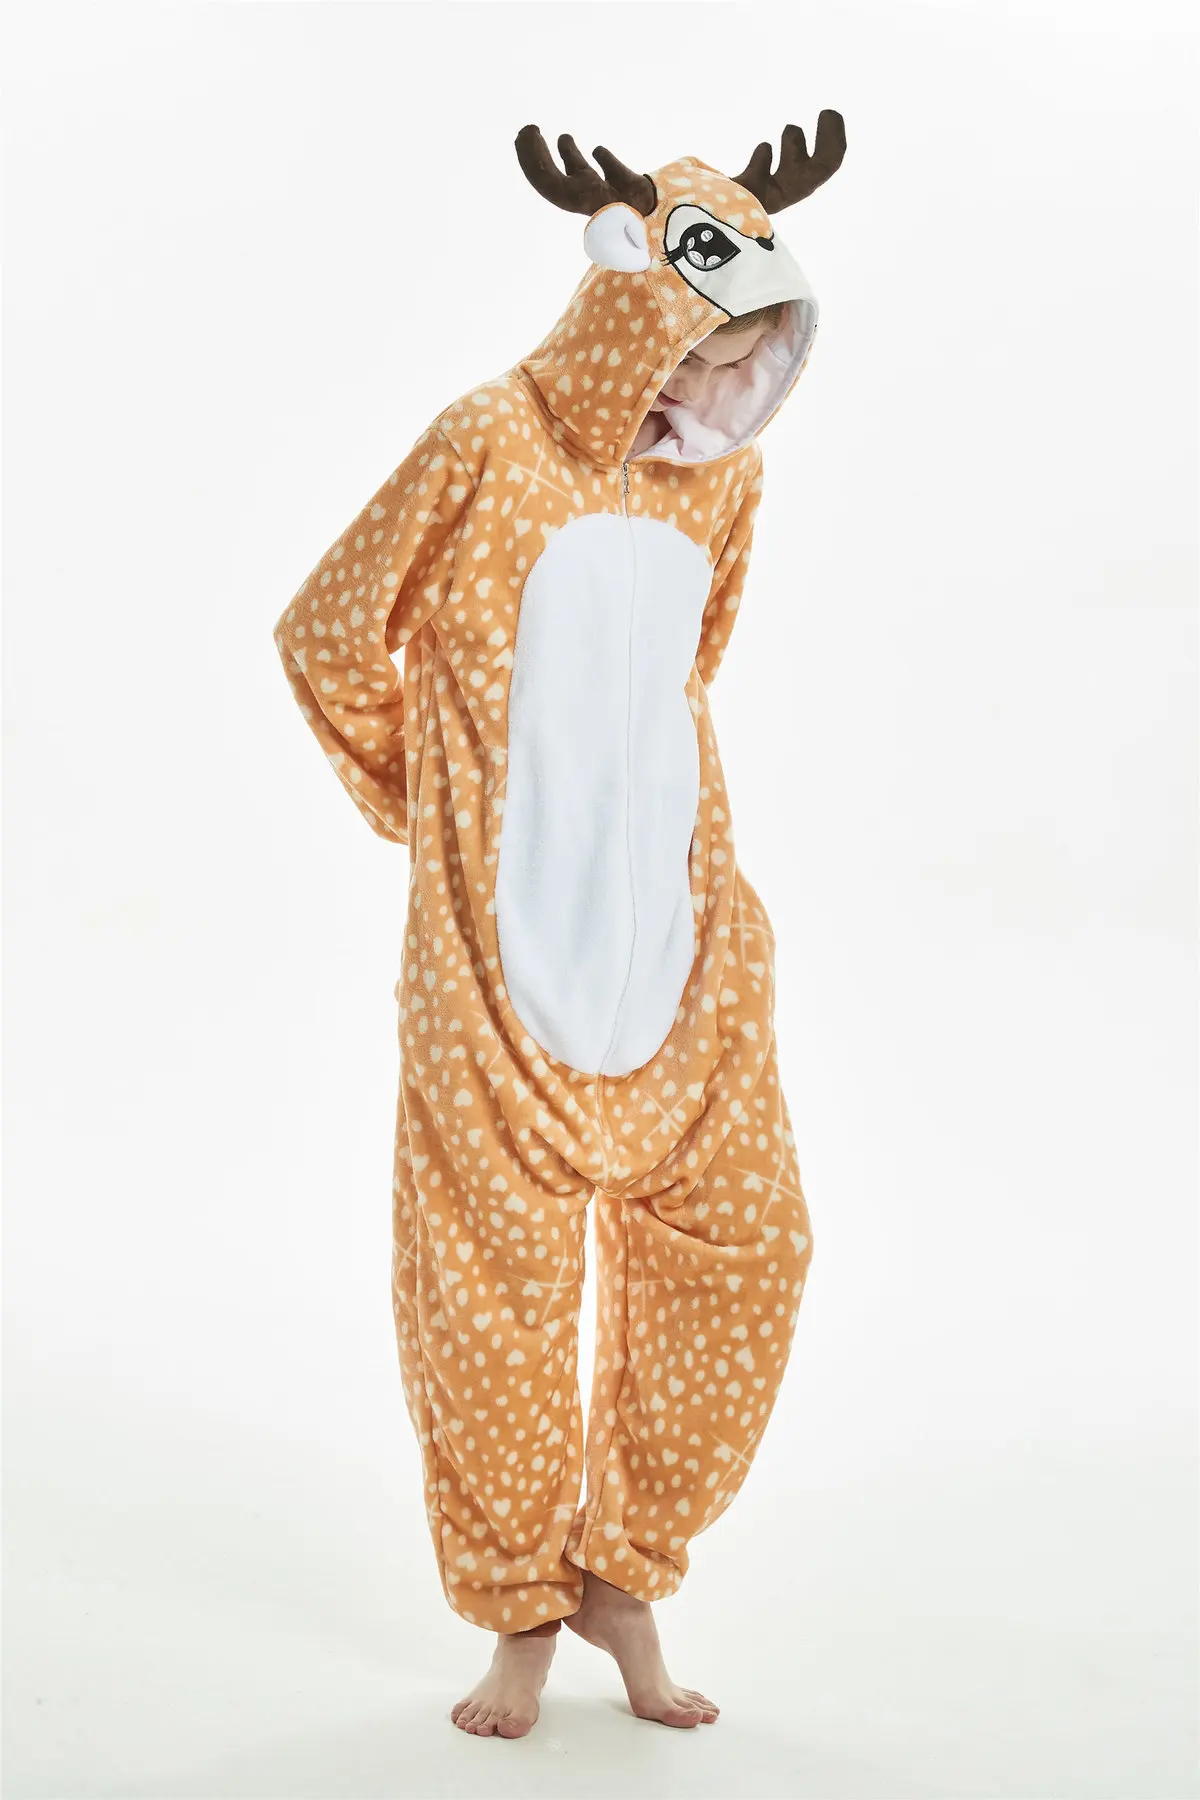 3 кигуруми Единорог Медведь Олень кошка собака пижамы для взрослых Косплей Костюм Onesie пижамы Домашняя одежда для вечеринок для женщин и мужчин пижамы